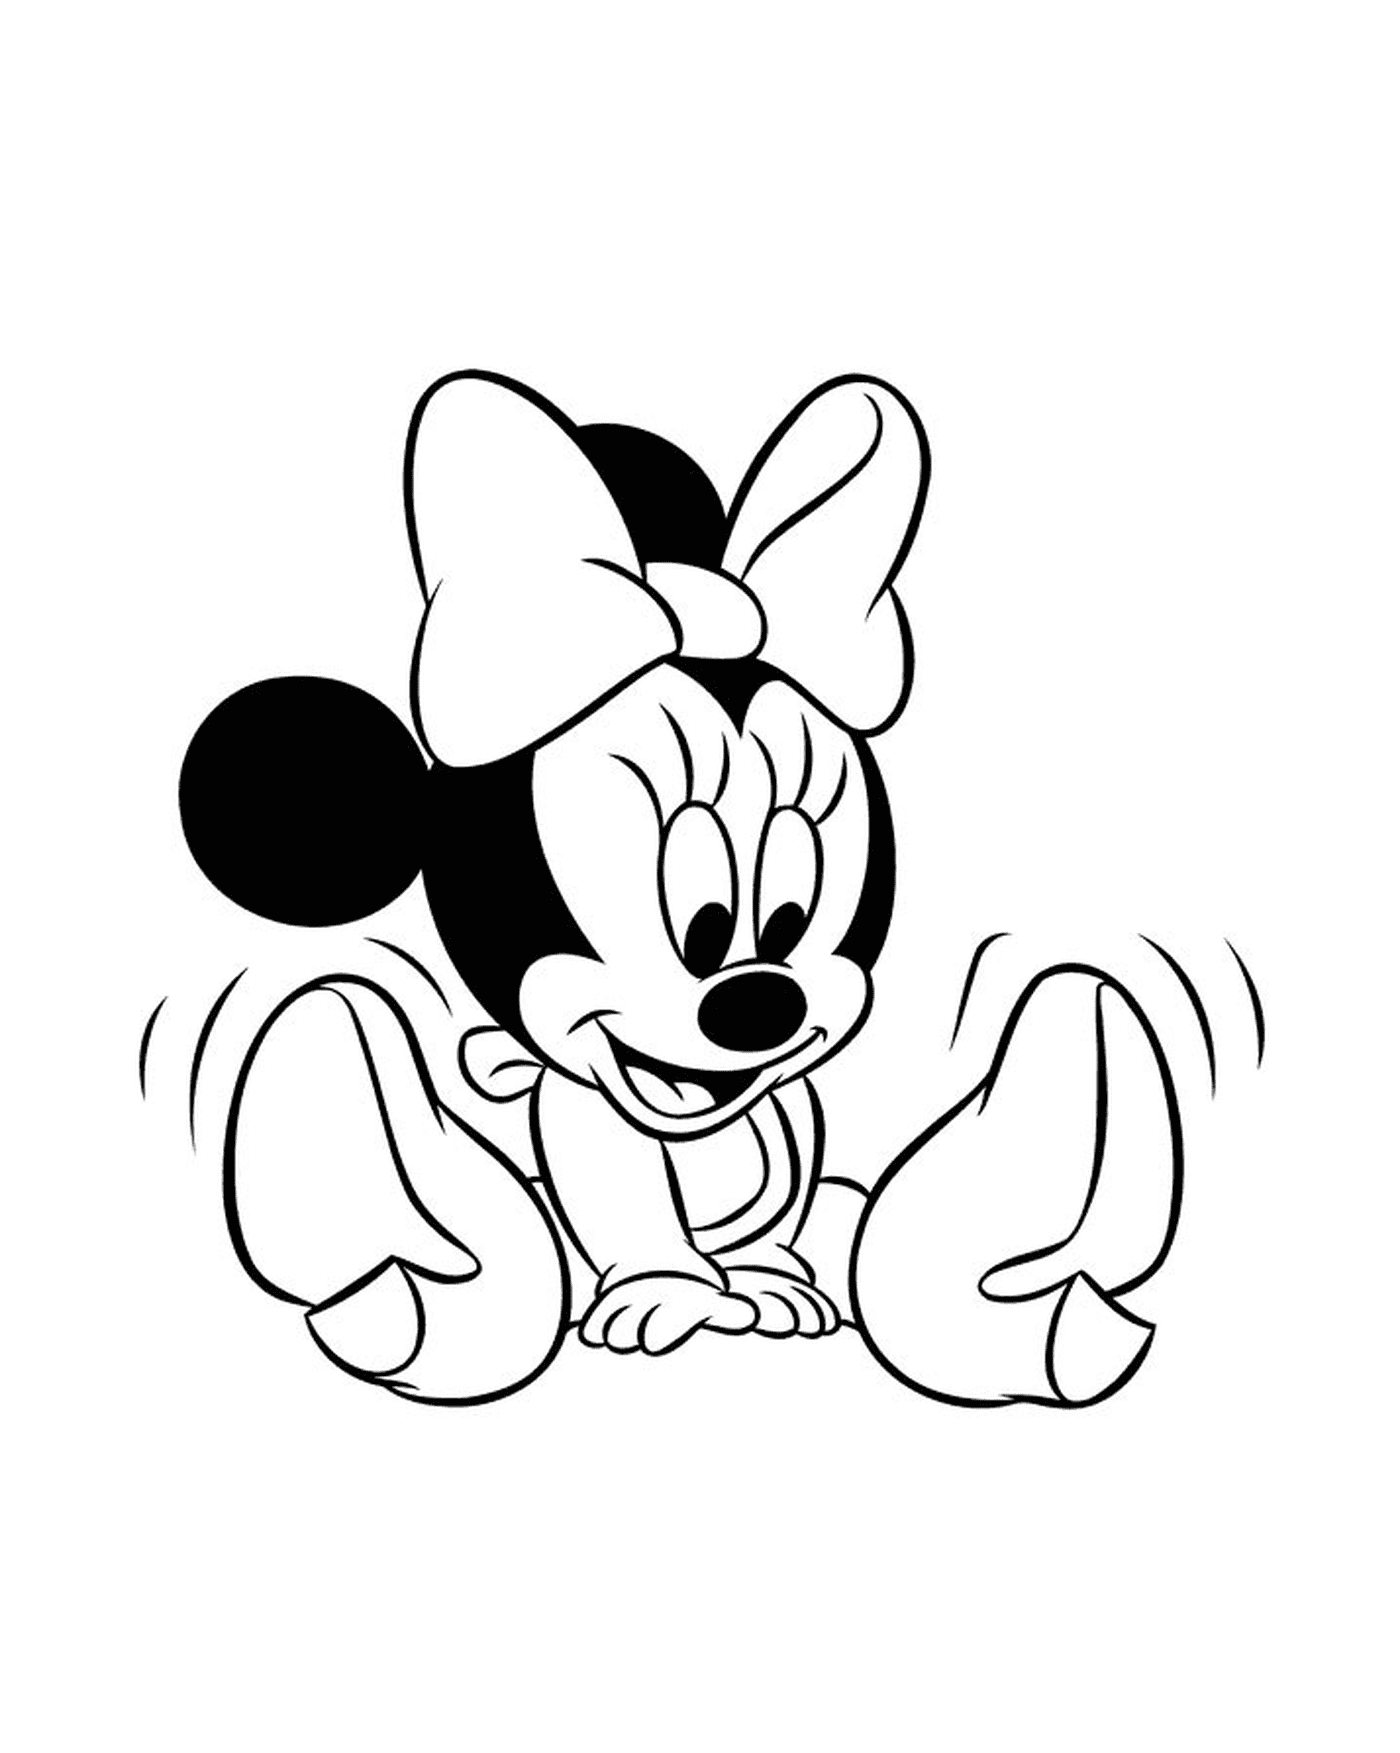  Minnie Mouse bebé sentado en el suelo, las piernas cruzadas 